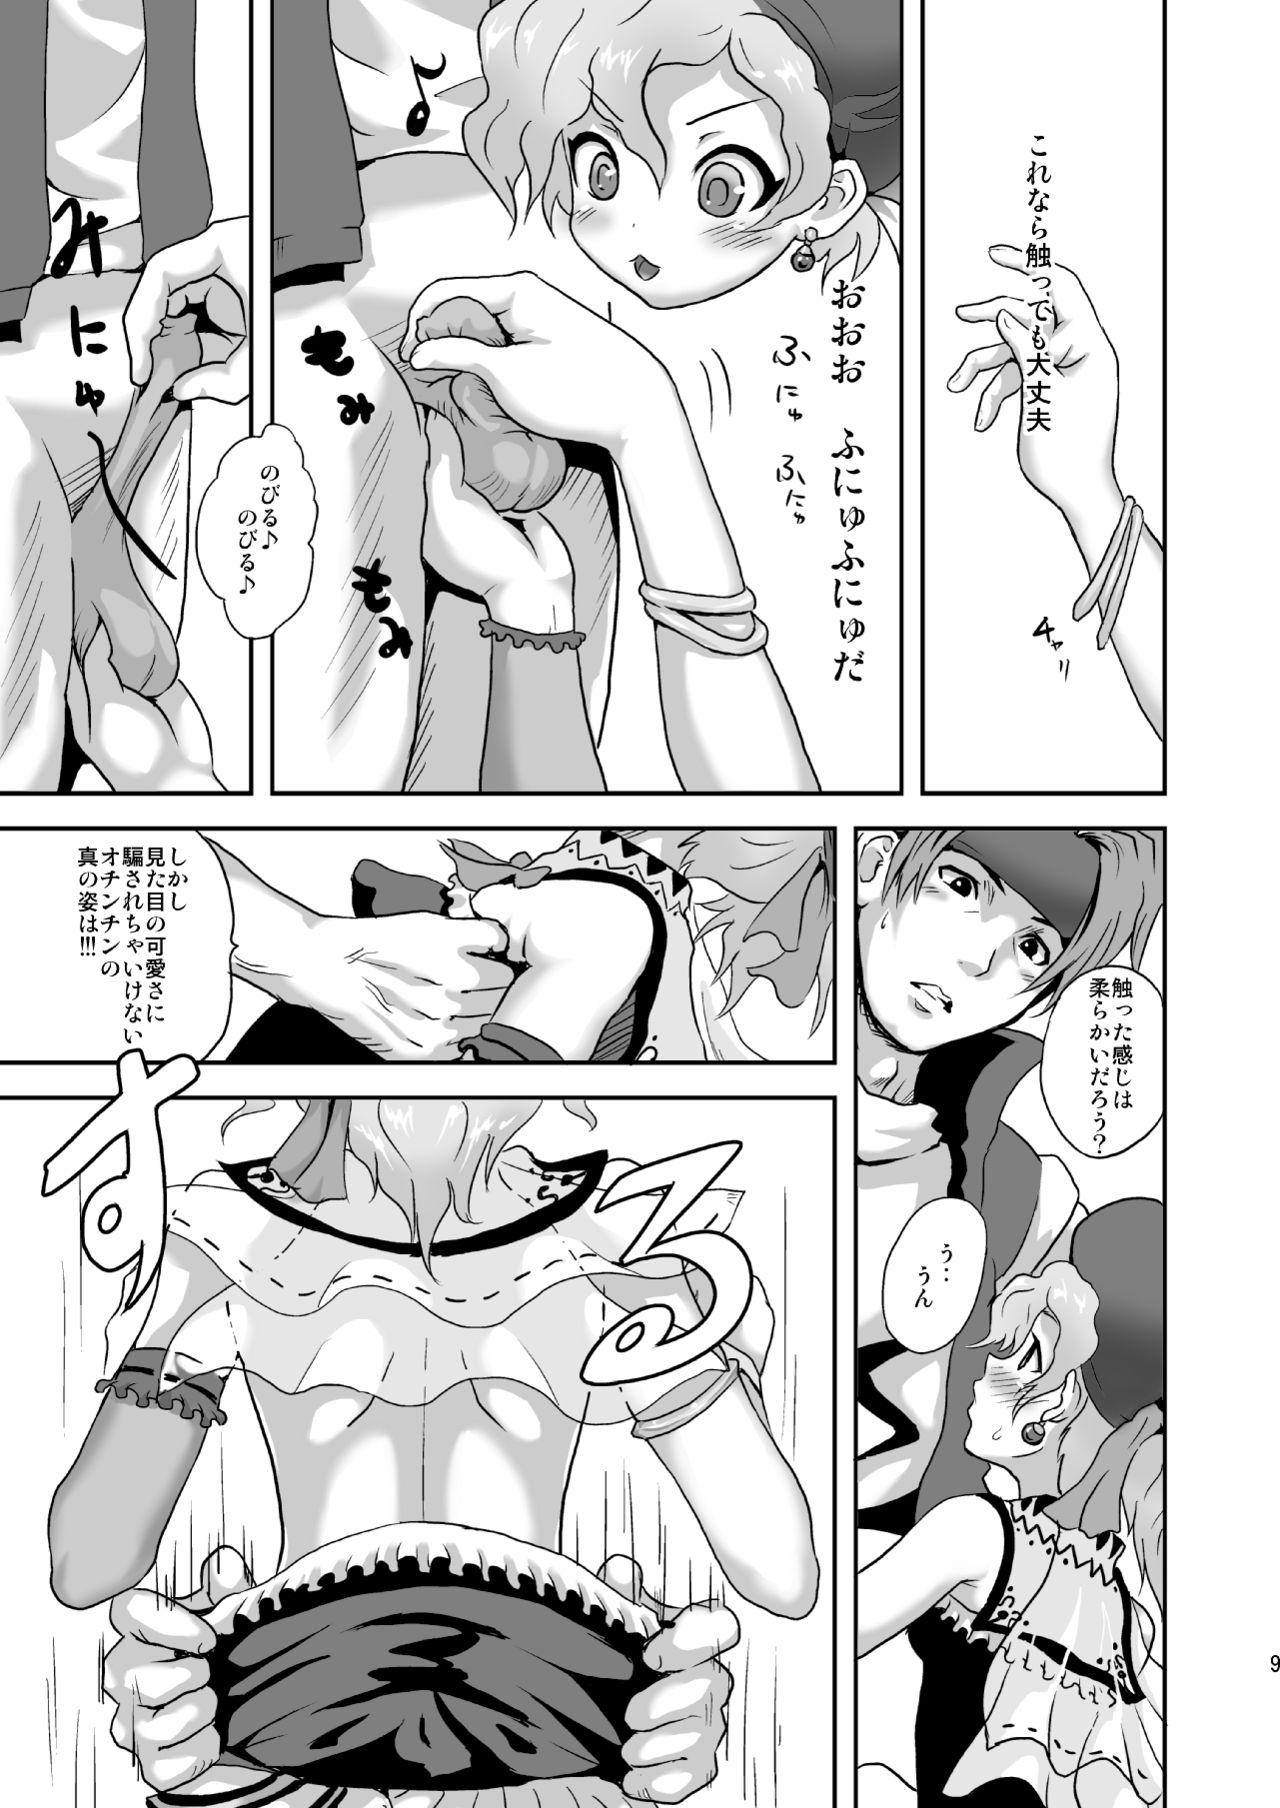 Ruiva Relm-tan no Hajirai Sketch - Final fantasy vi Tiny Tits Porn - Page 8